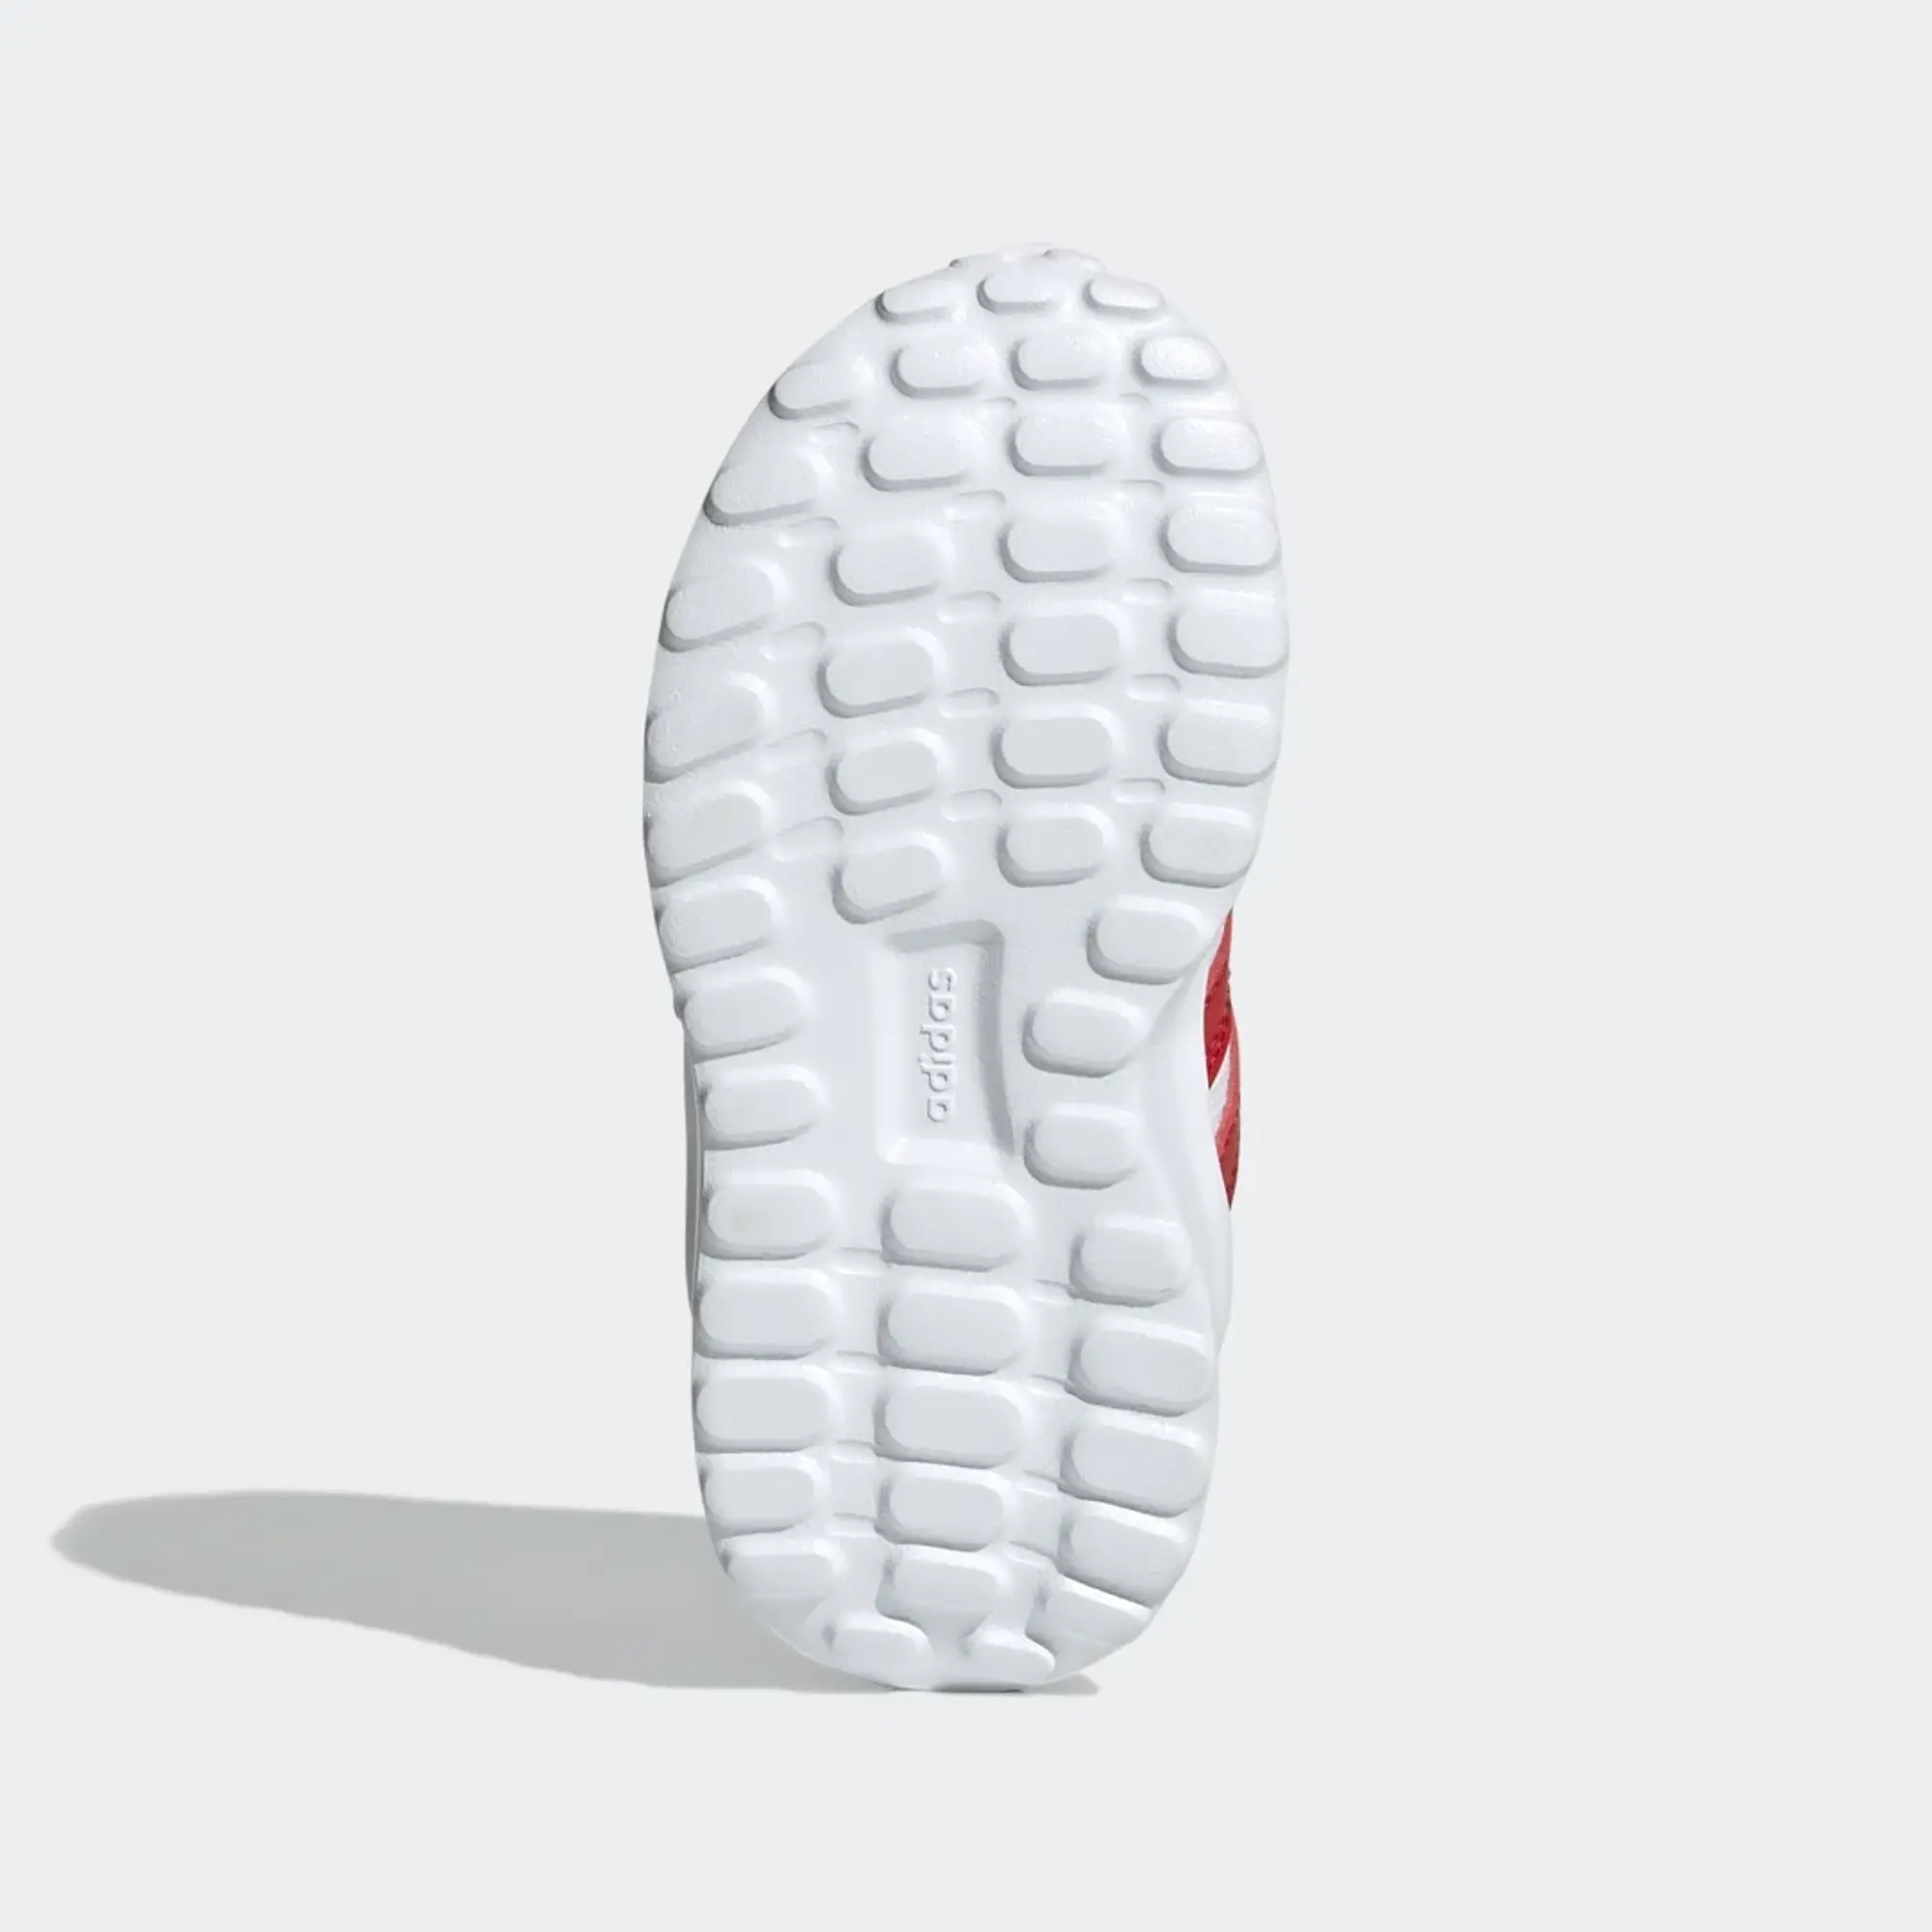 adidas Run 70s Shoes - Cloud White / Vivid Red / Dark Blue